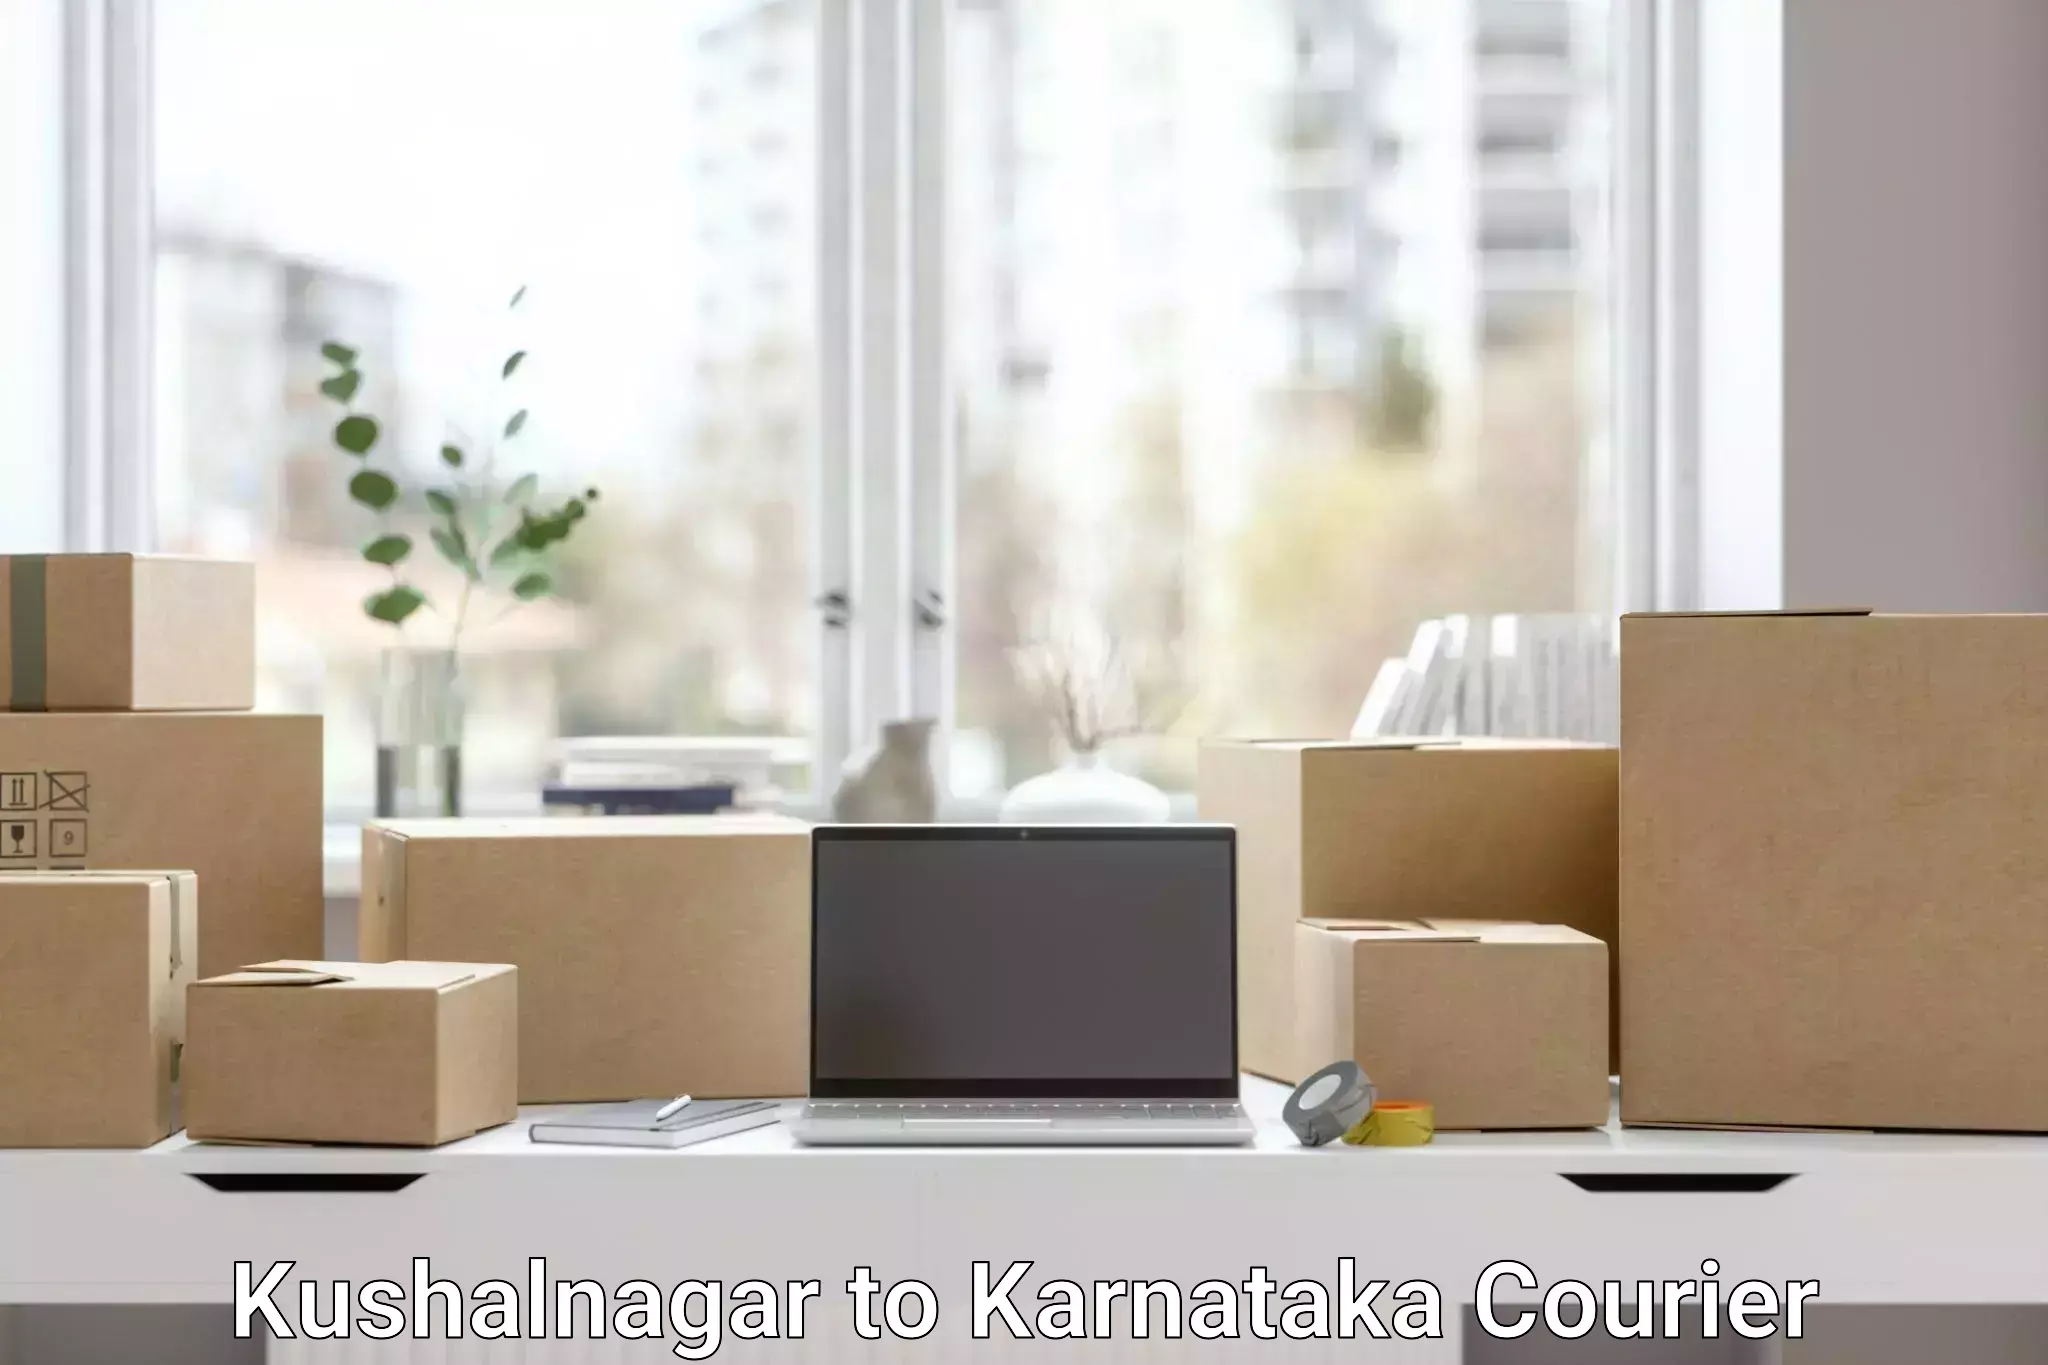 Courier service partnerships Kushalnagar to Sindagi